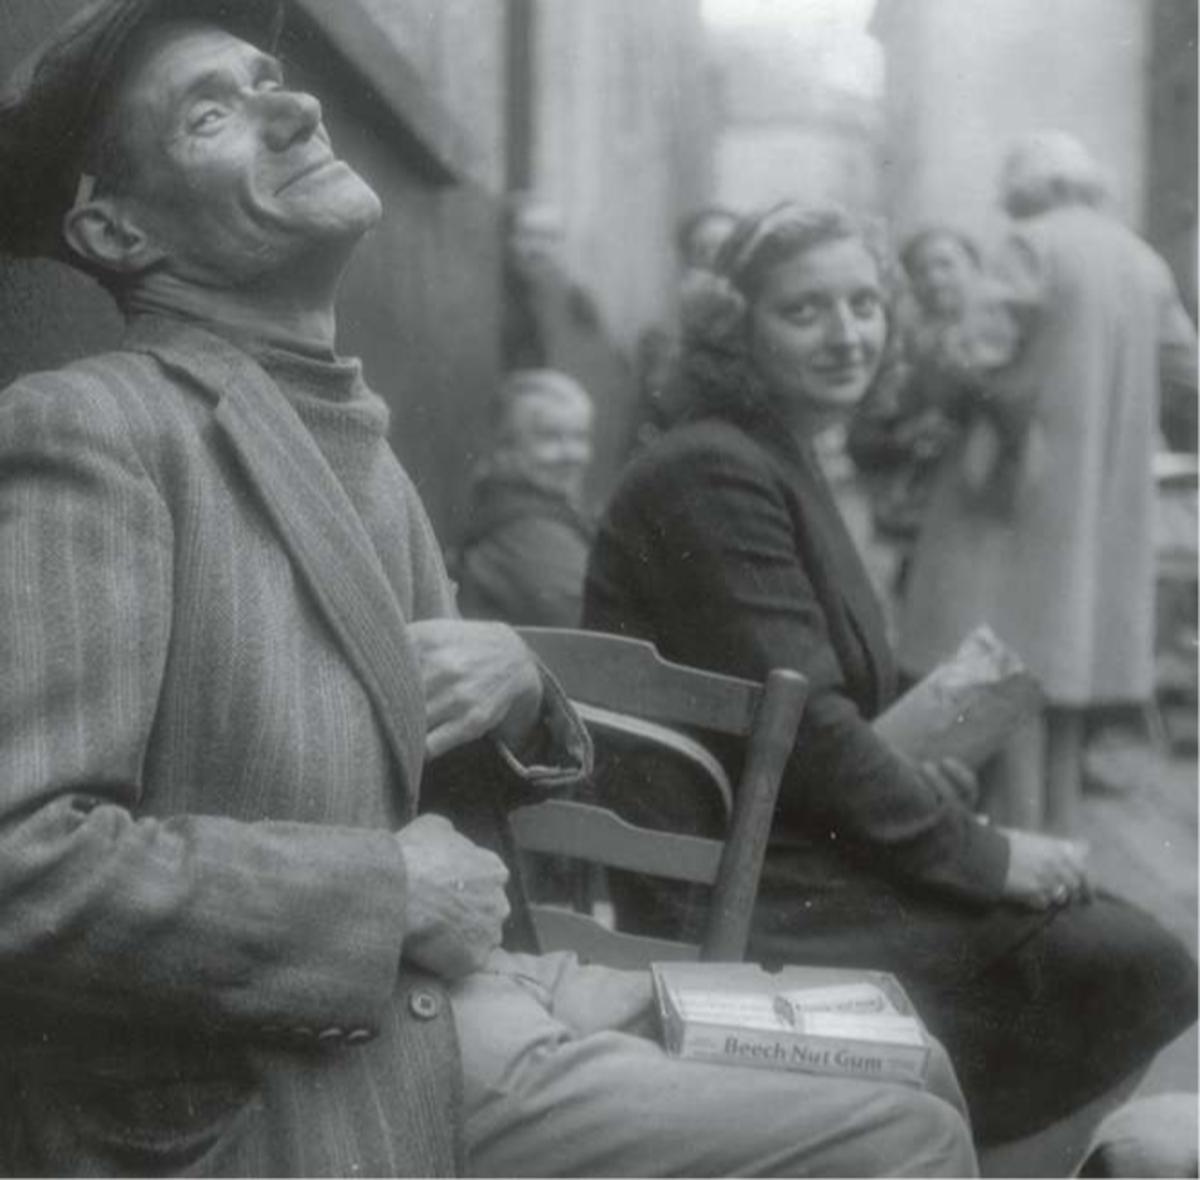 Brussel, 3 juli 1945: de zwarte markt tiert welig. In de Radijzenstraat in Brussel verhandelt deze man kauwgom, in zijn jas zit nog meer koopwaar verstopt.